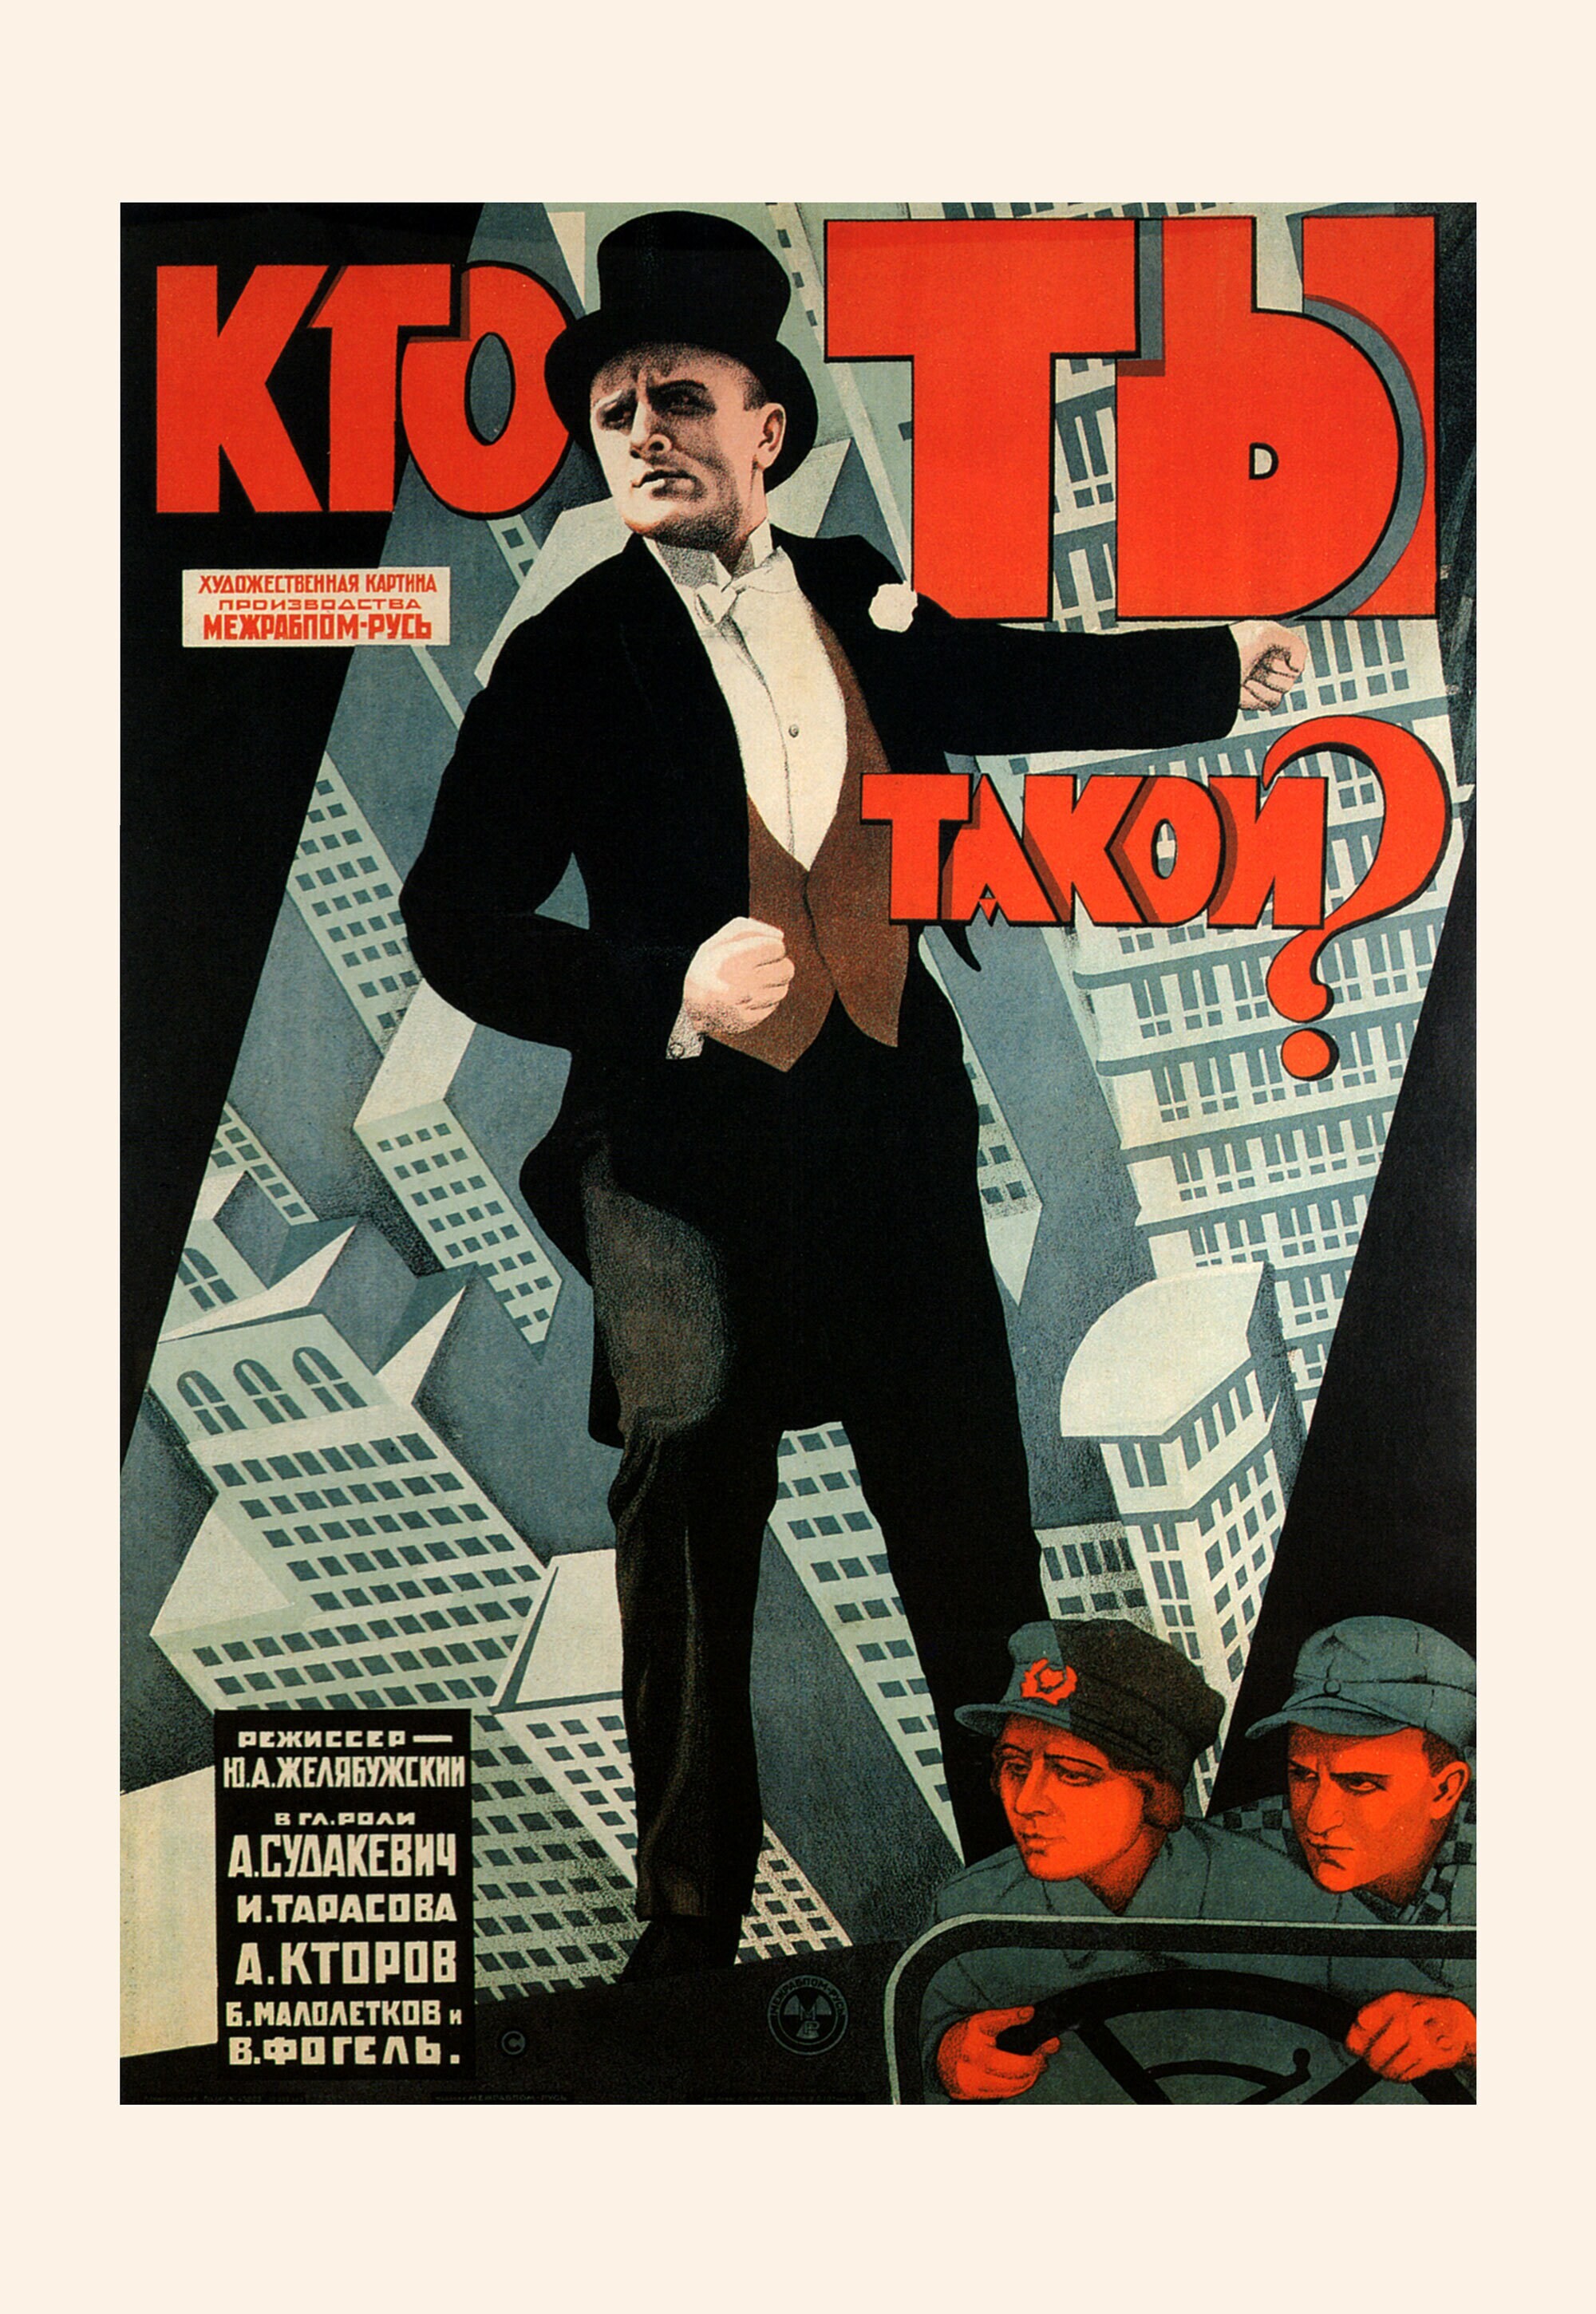 Кто ты такой, 1927 год, режиссёр Ю. А. Желябужский, плакат к фильму, автор неизвестен (авангардное советское искусство, 1920-е)